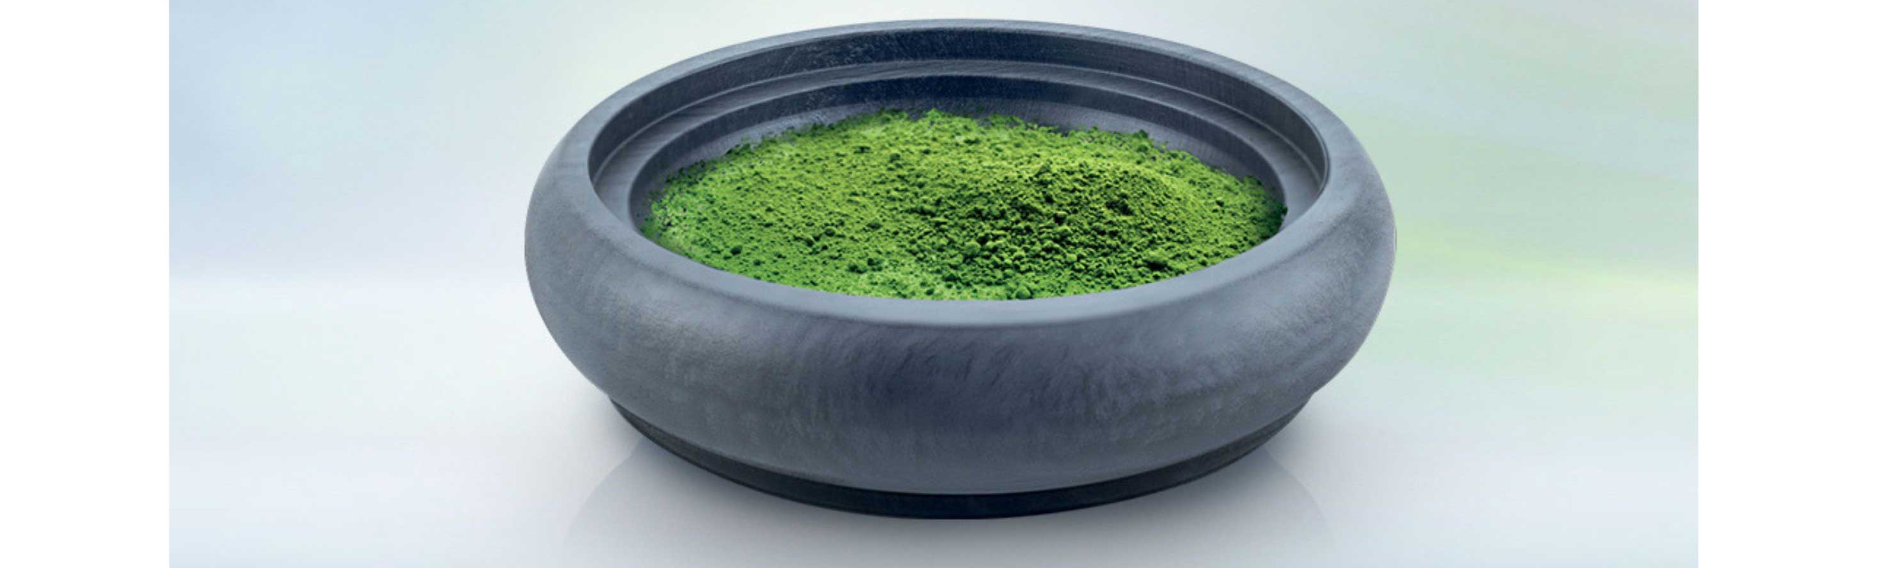 spirulina zöld alga szürke edényben